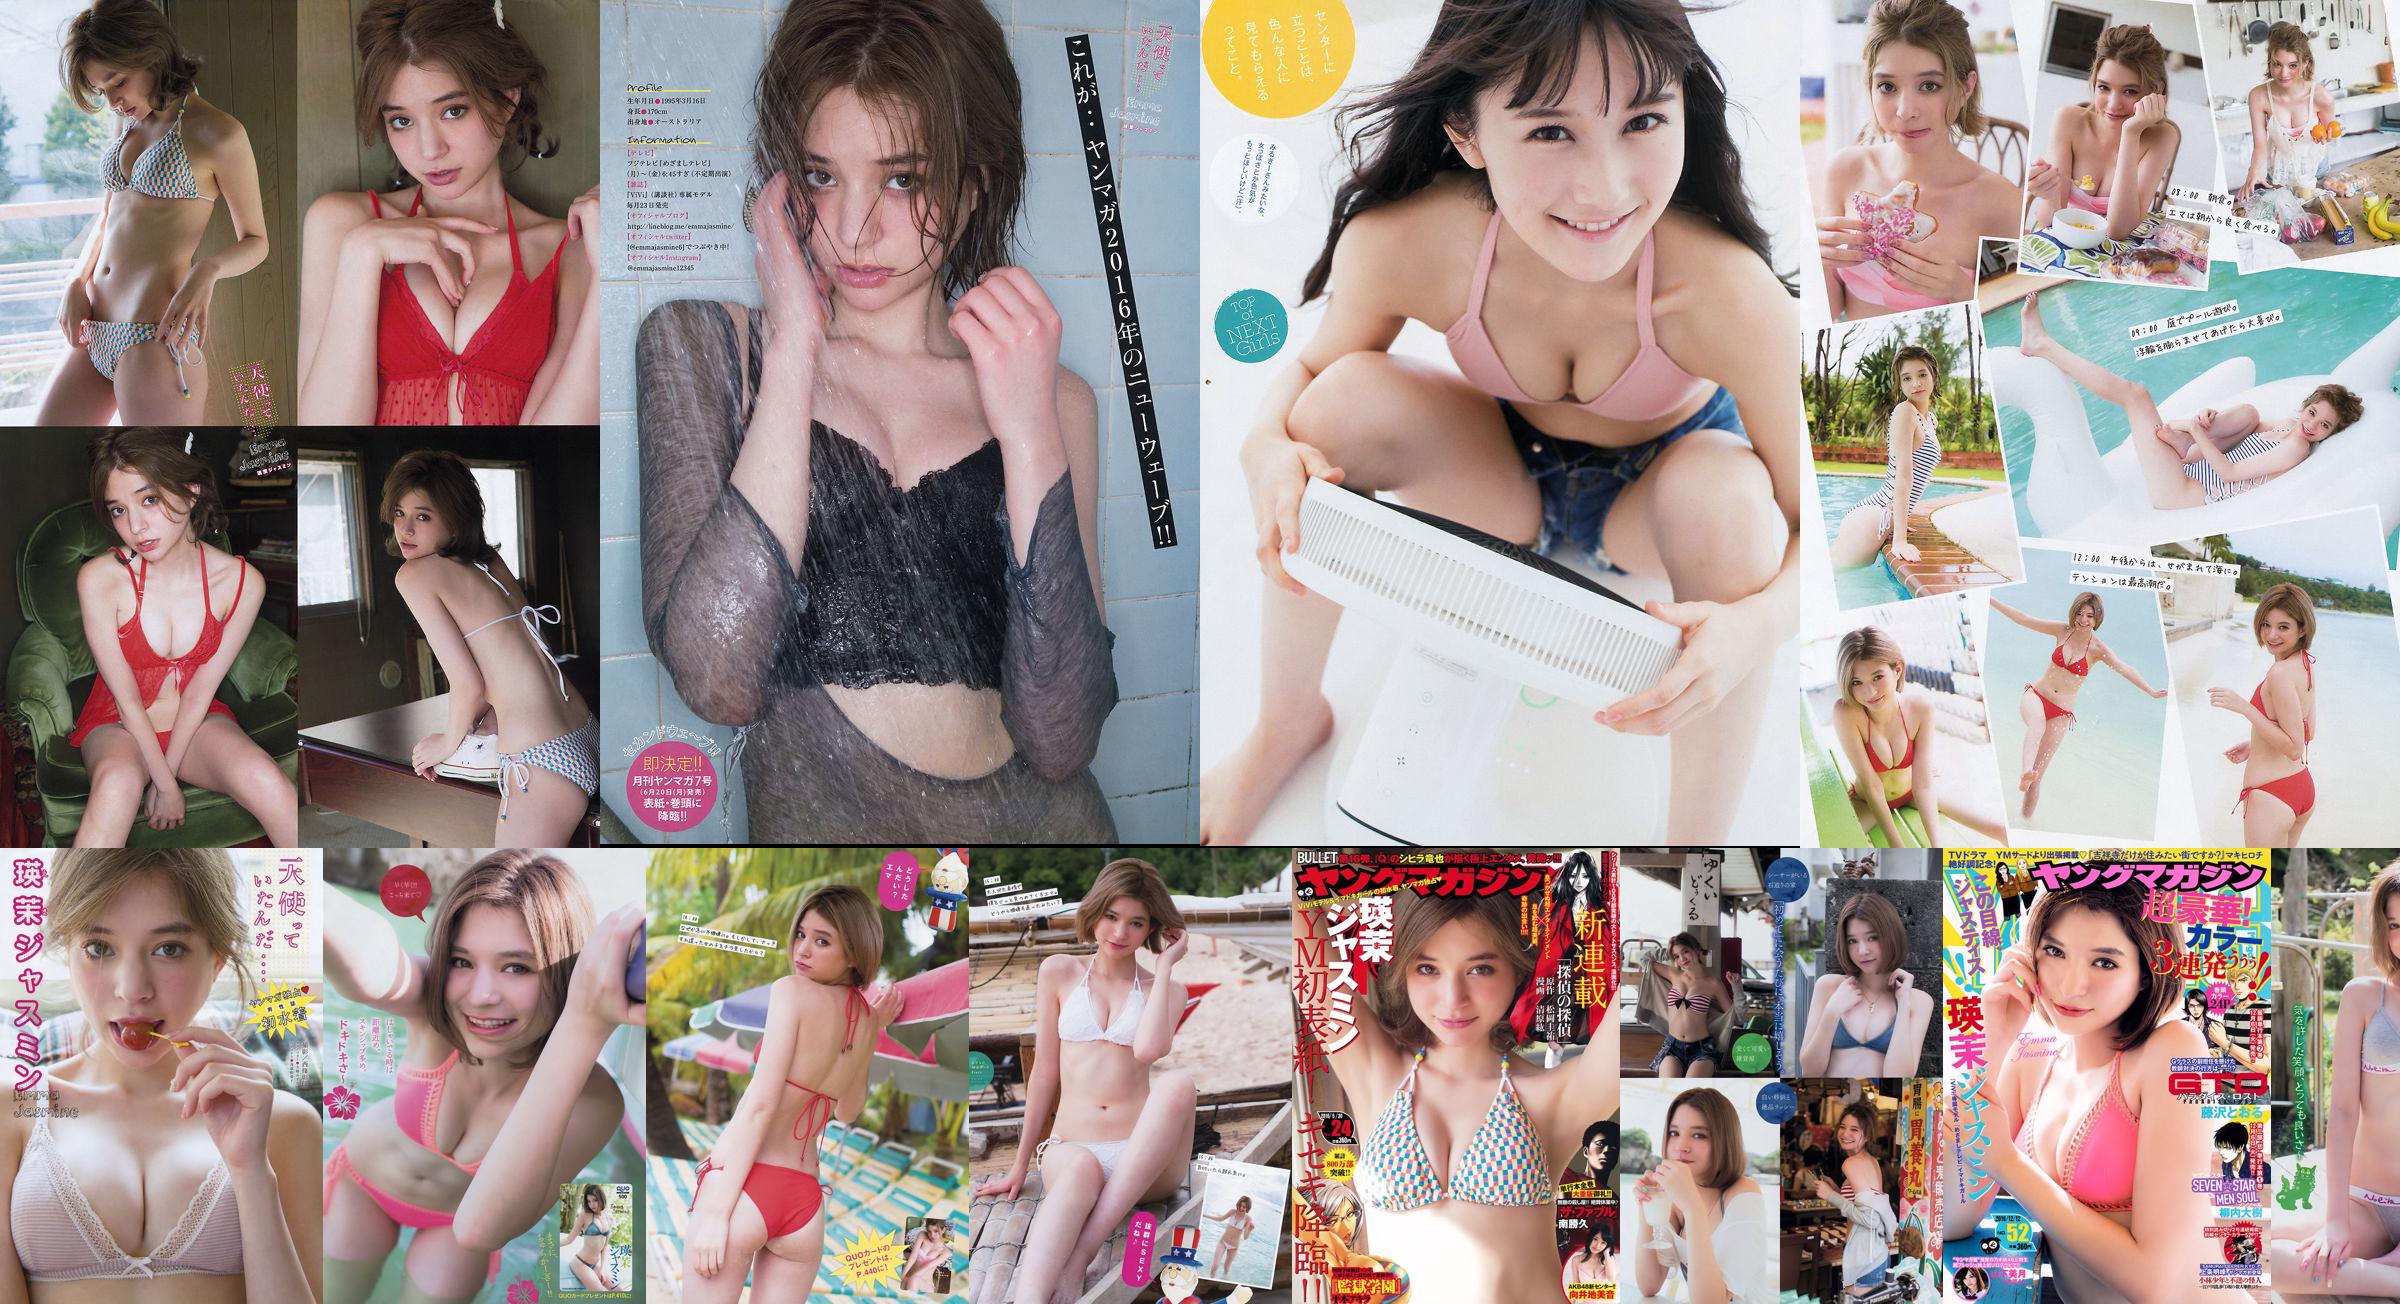 [Young Magazine] Emma Jasmine Mizuki Yamashita 2016 Nr. 52 Foto No.383328 Seite 3